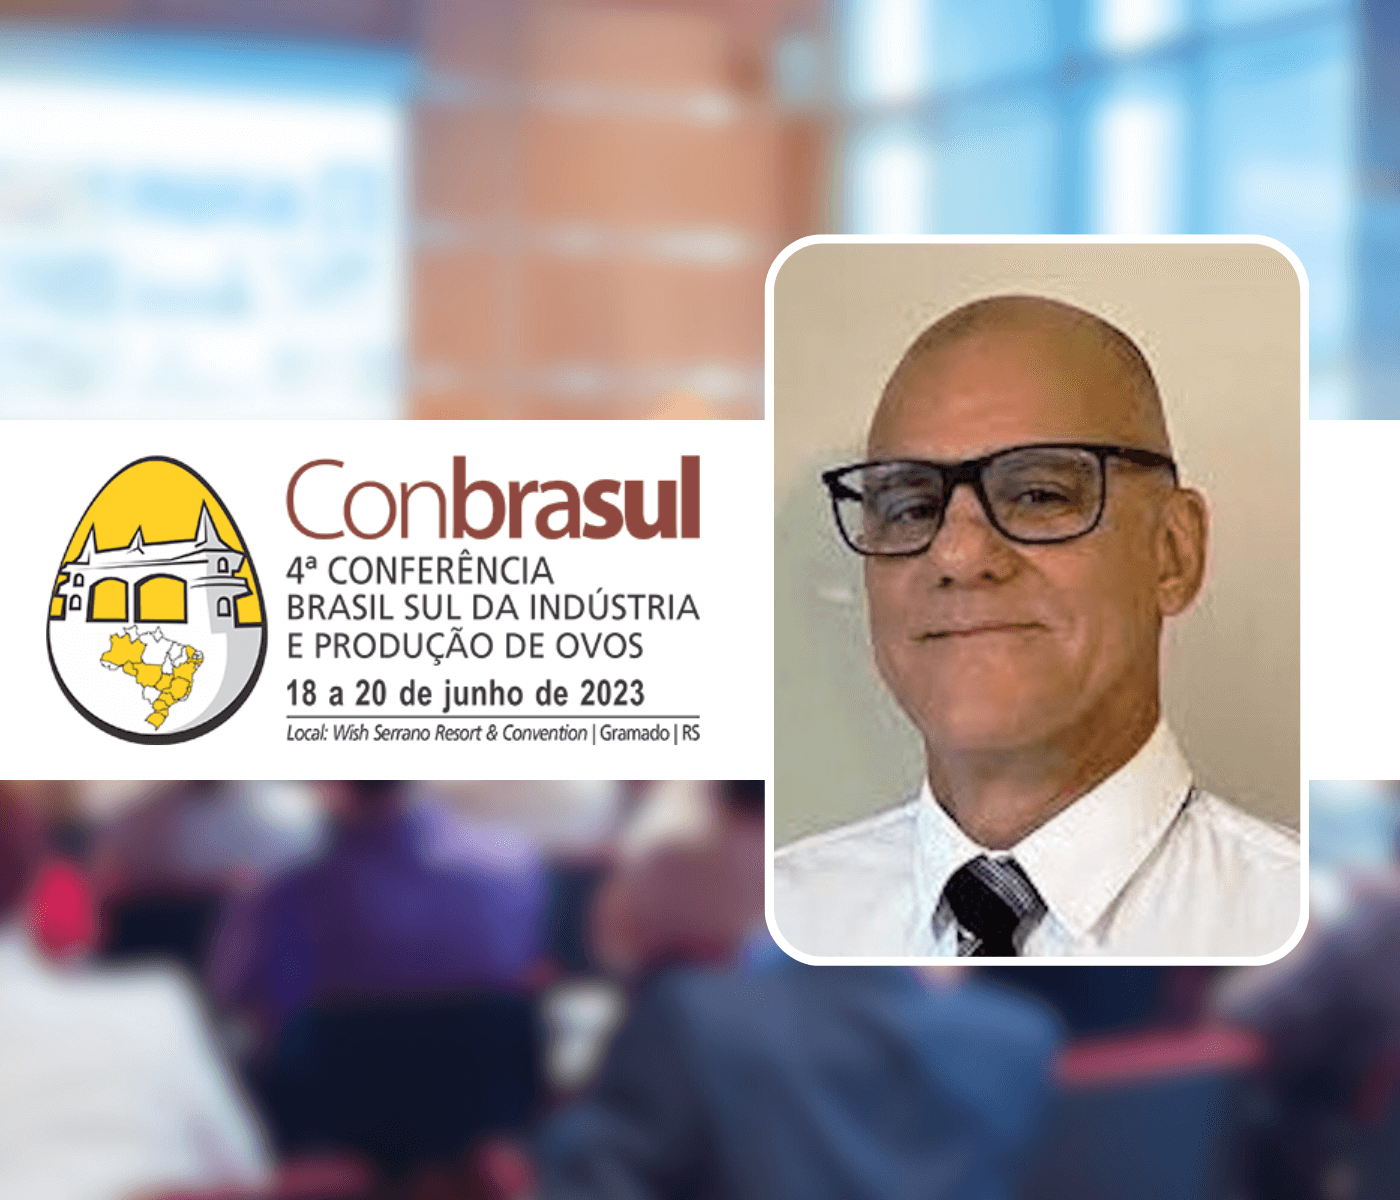 4ª Conbrasul discute formulação de ração de custo mínimo para produção de ovos com Sergio Vieira, da UFRGS